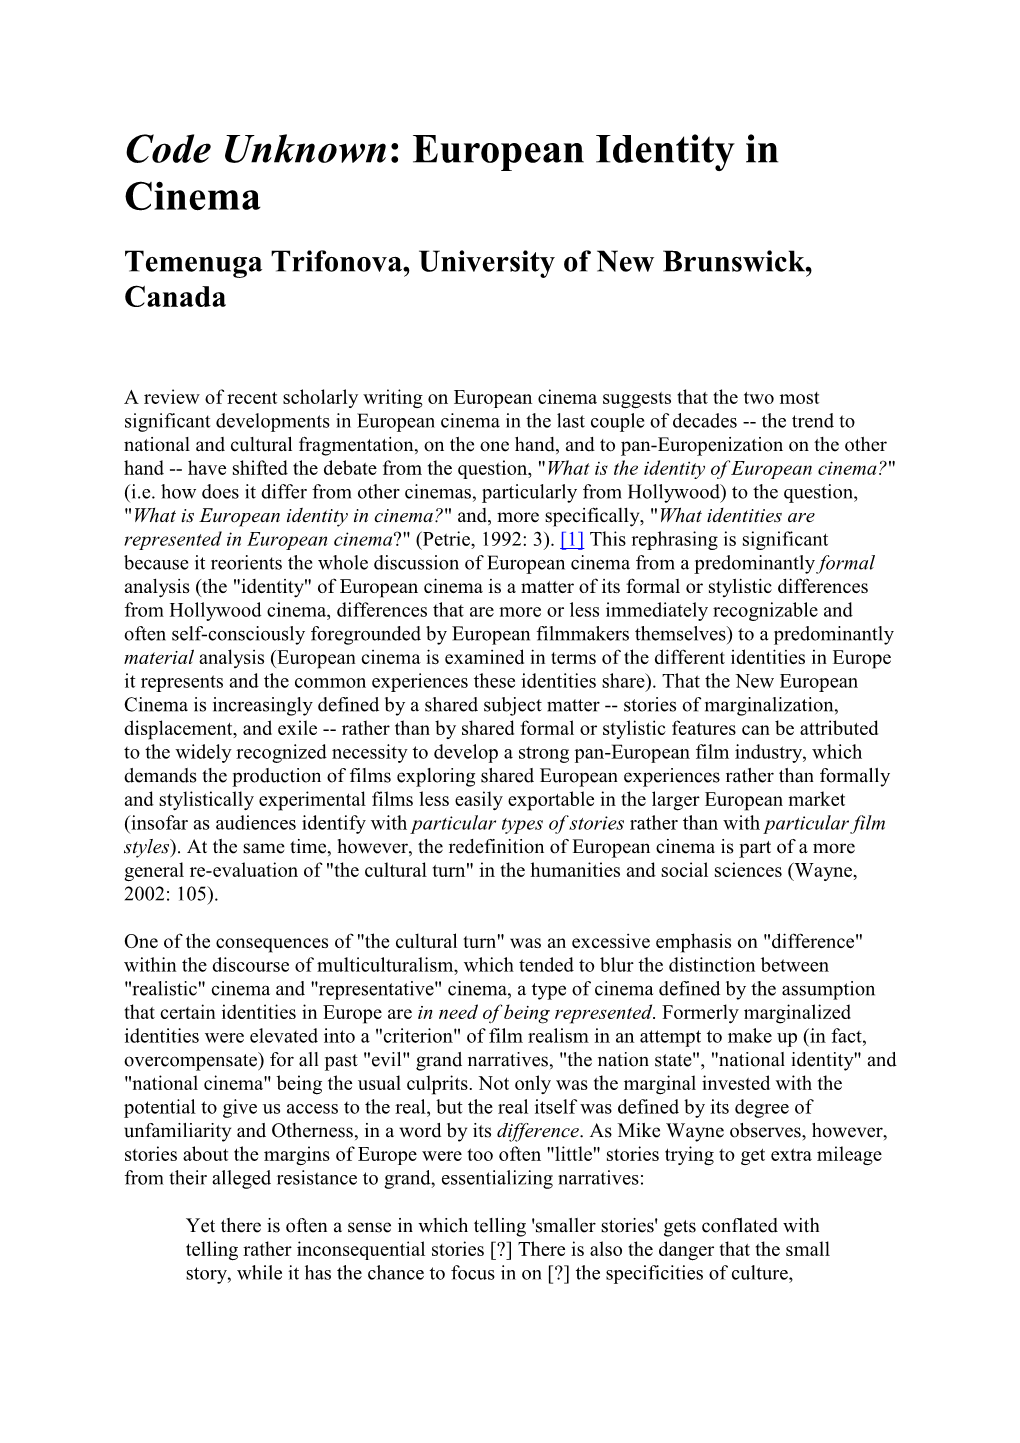 Code Unknown: European Identity in Cinema Temenuga Trifonova, University of New Brunswick, Canada